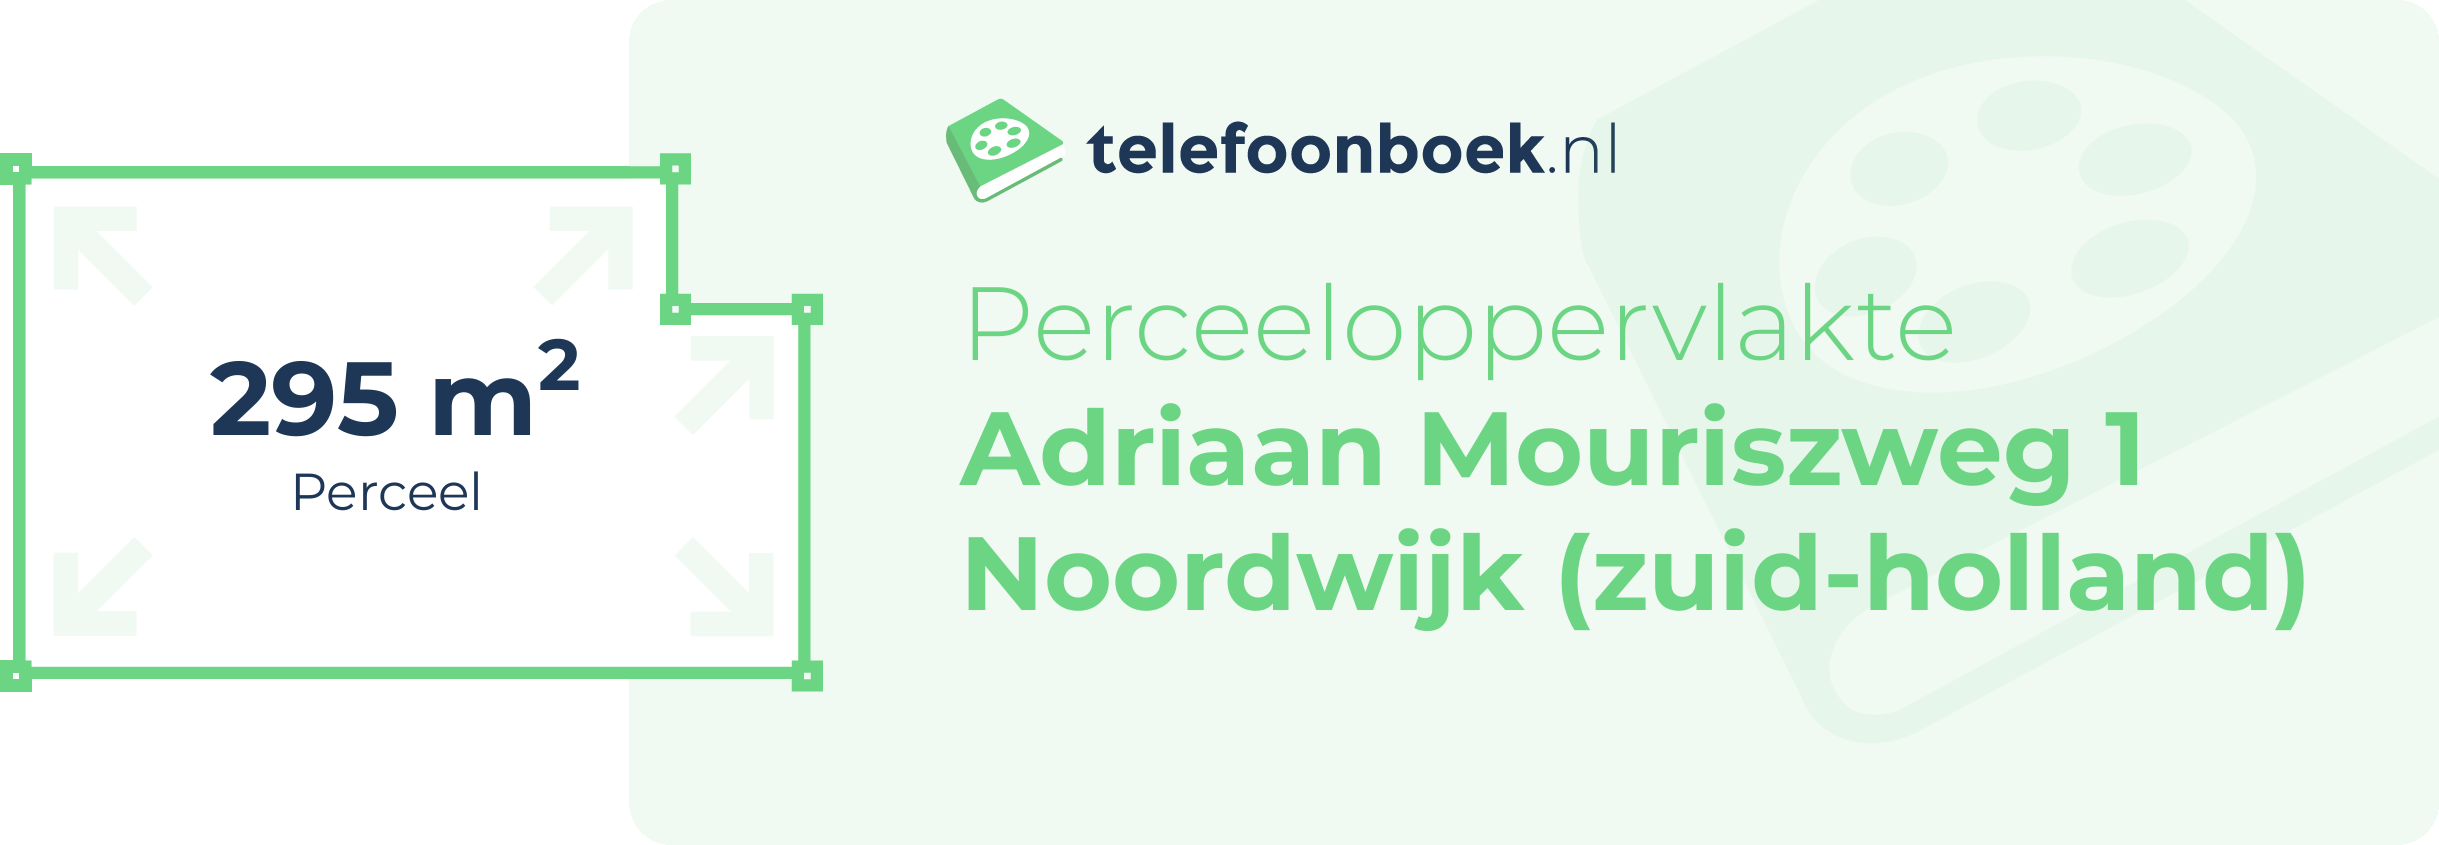 Perceeloppervlakte Adriaan Mouriszweg 1 Noordwijk (Zuid-Holland)